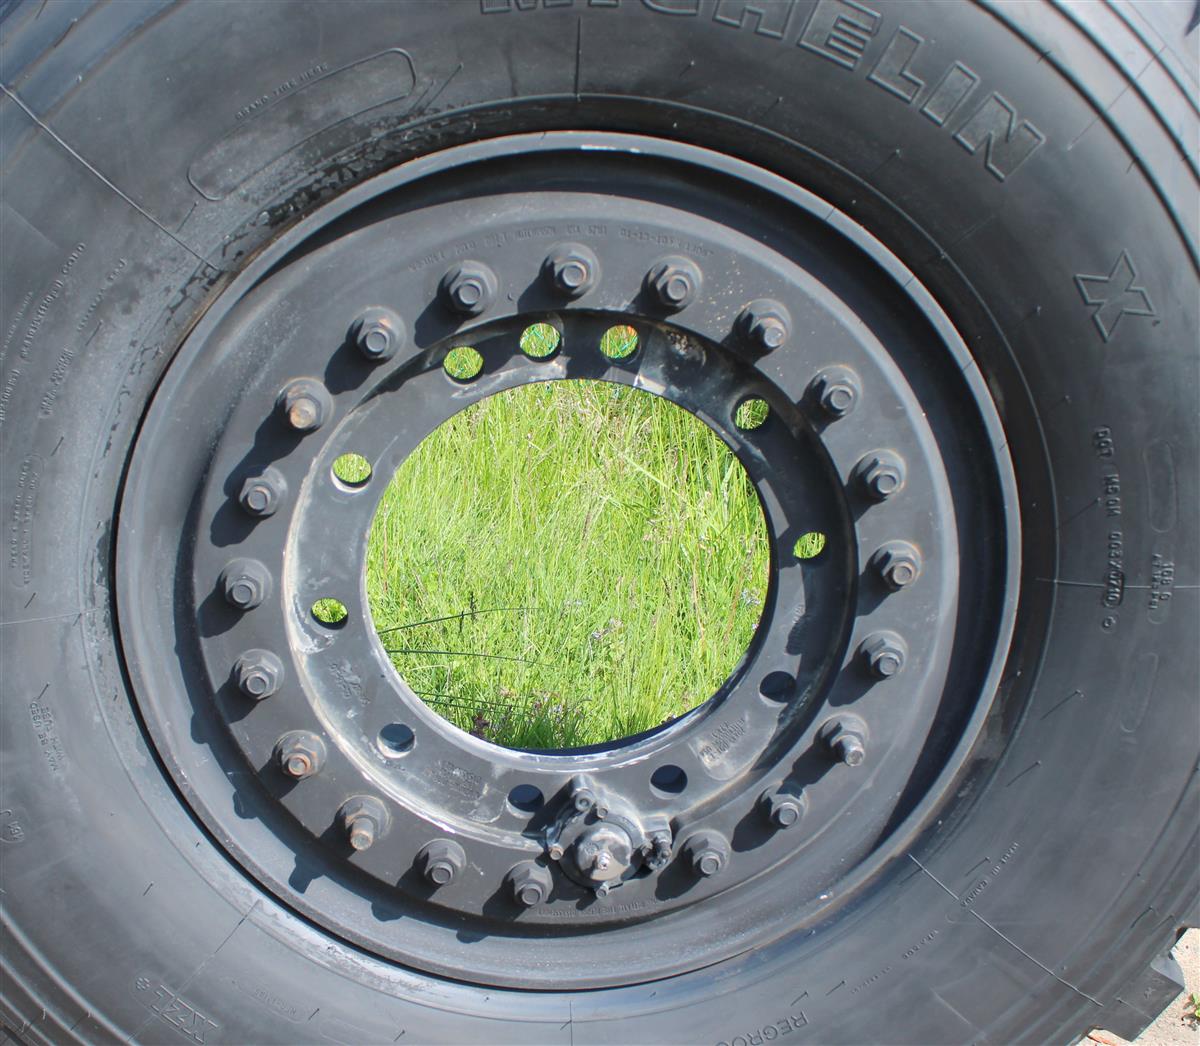 TI-1846 | TI-1846 Michelin 39585R20 XZL Tire Mounted on Hutchinson Aluminum Rim  (2).JPG